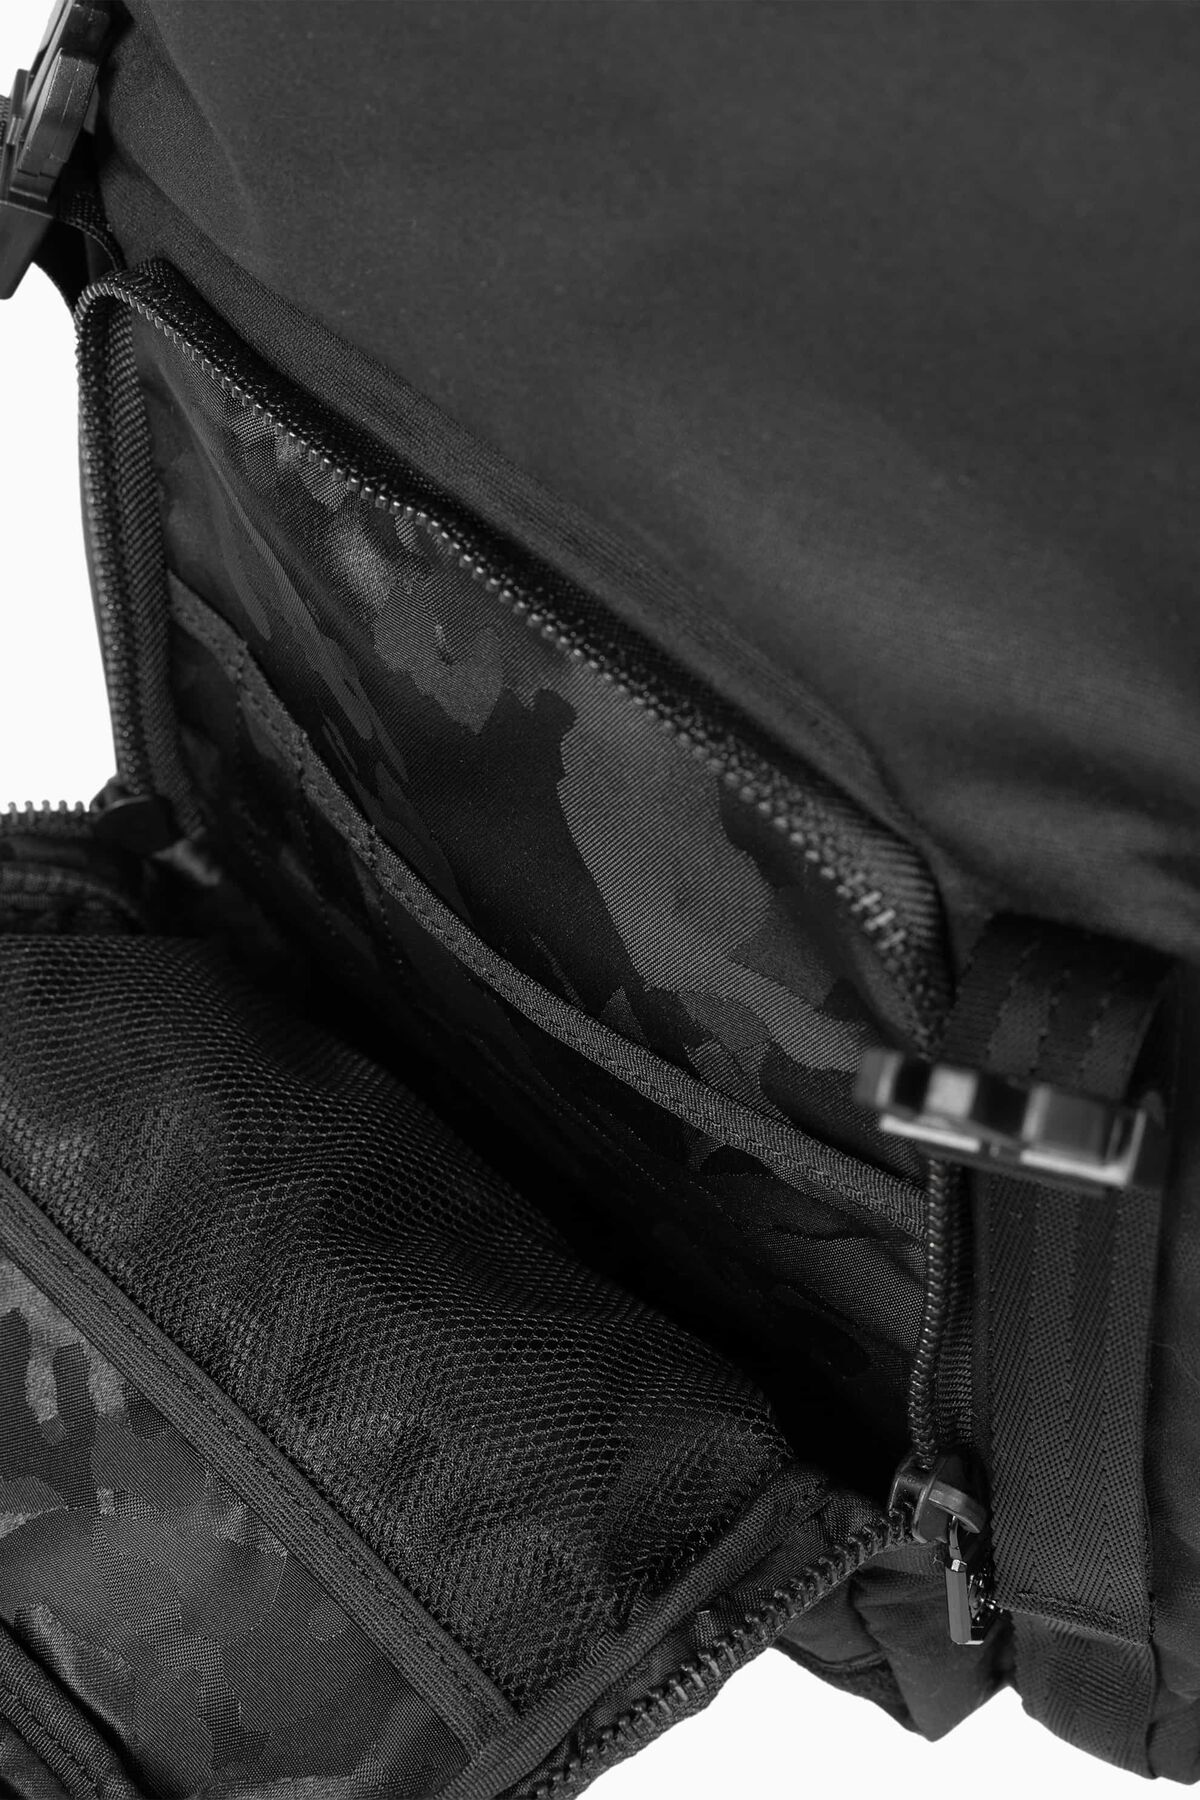 Monogrammed Black Camo Lauren Backpack